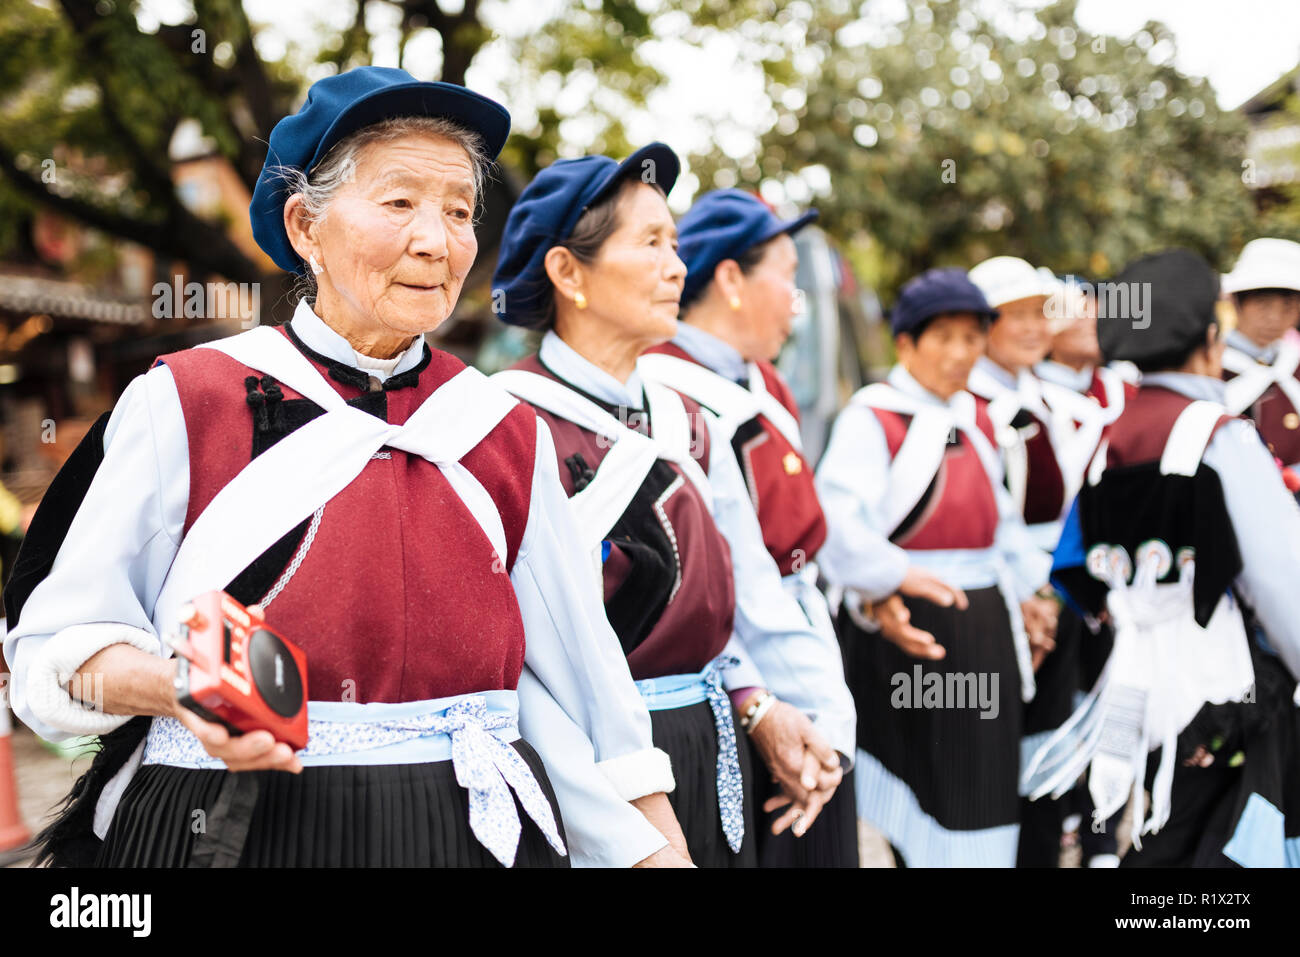 Naxi Donne nella tradizione dress dancing, Lijiang, nella provincia dello Yunnan in Cina Foto Stock